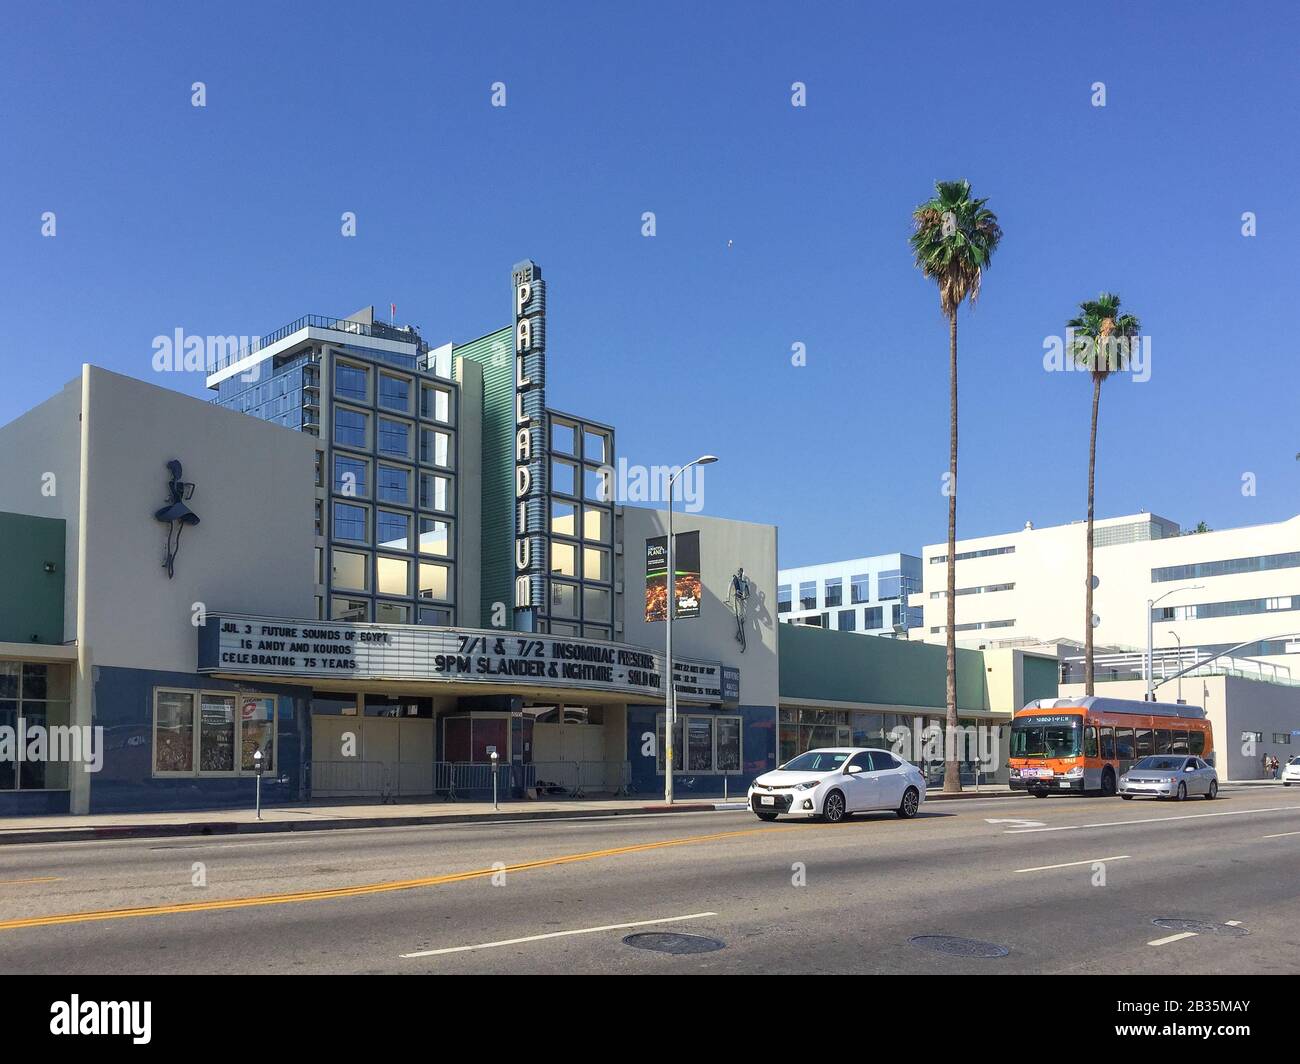 Hollywood, Californie est la demeure de nombreuses structures et monuments emblématiques qui rendent hommage aux célébrités et à l'industrie de la télévision et du cinéma. Banque D'Images